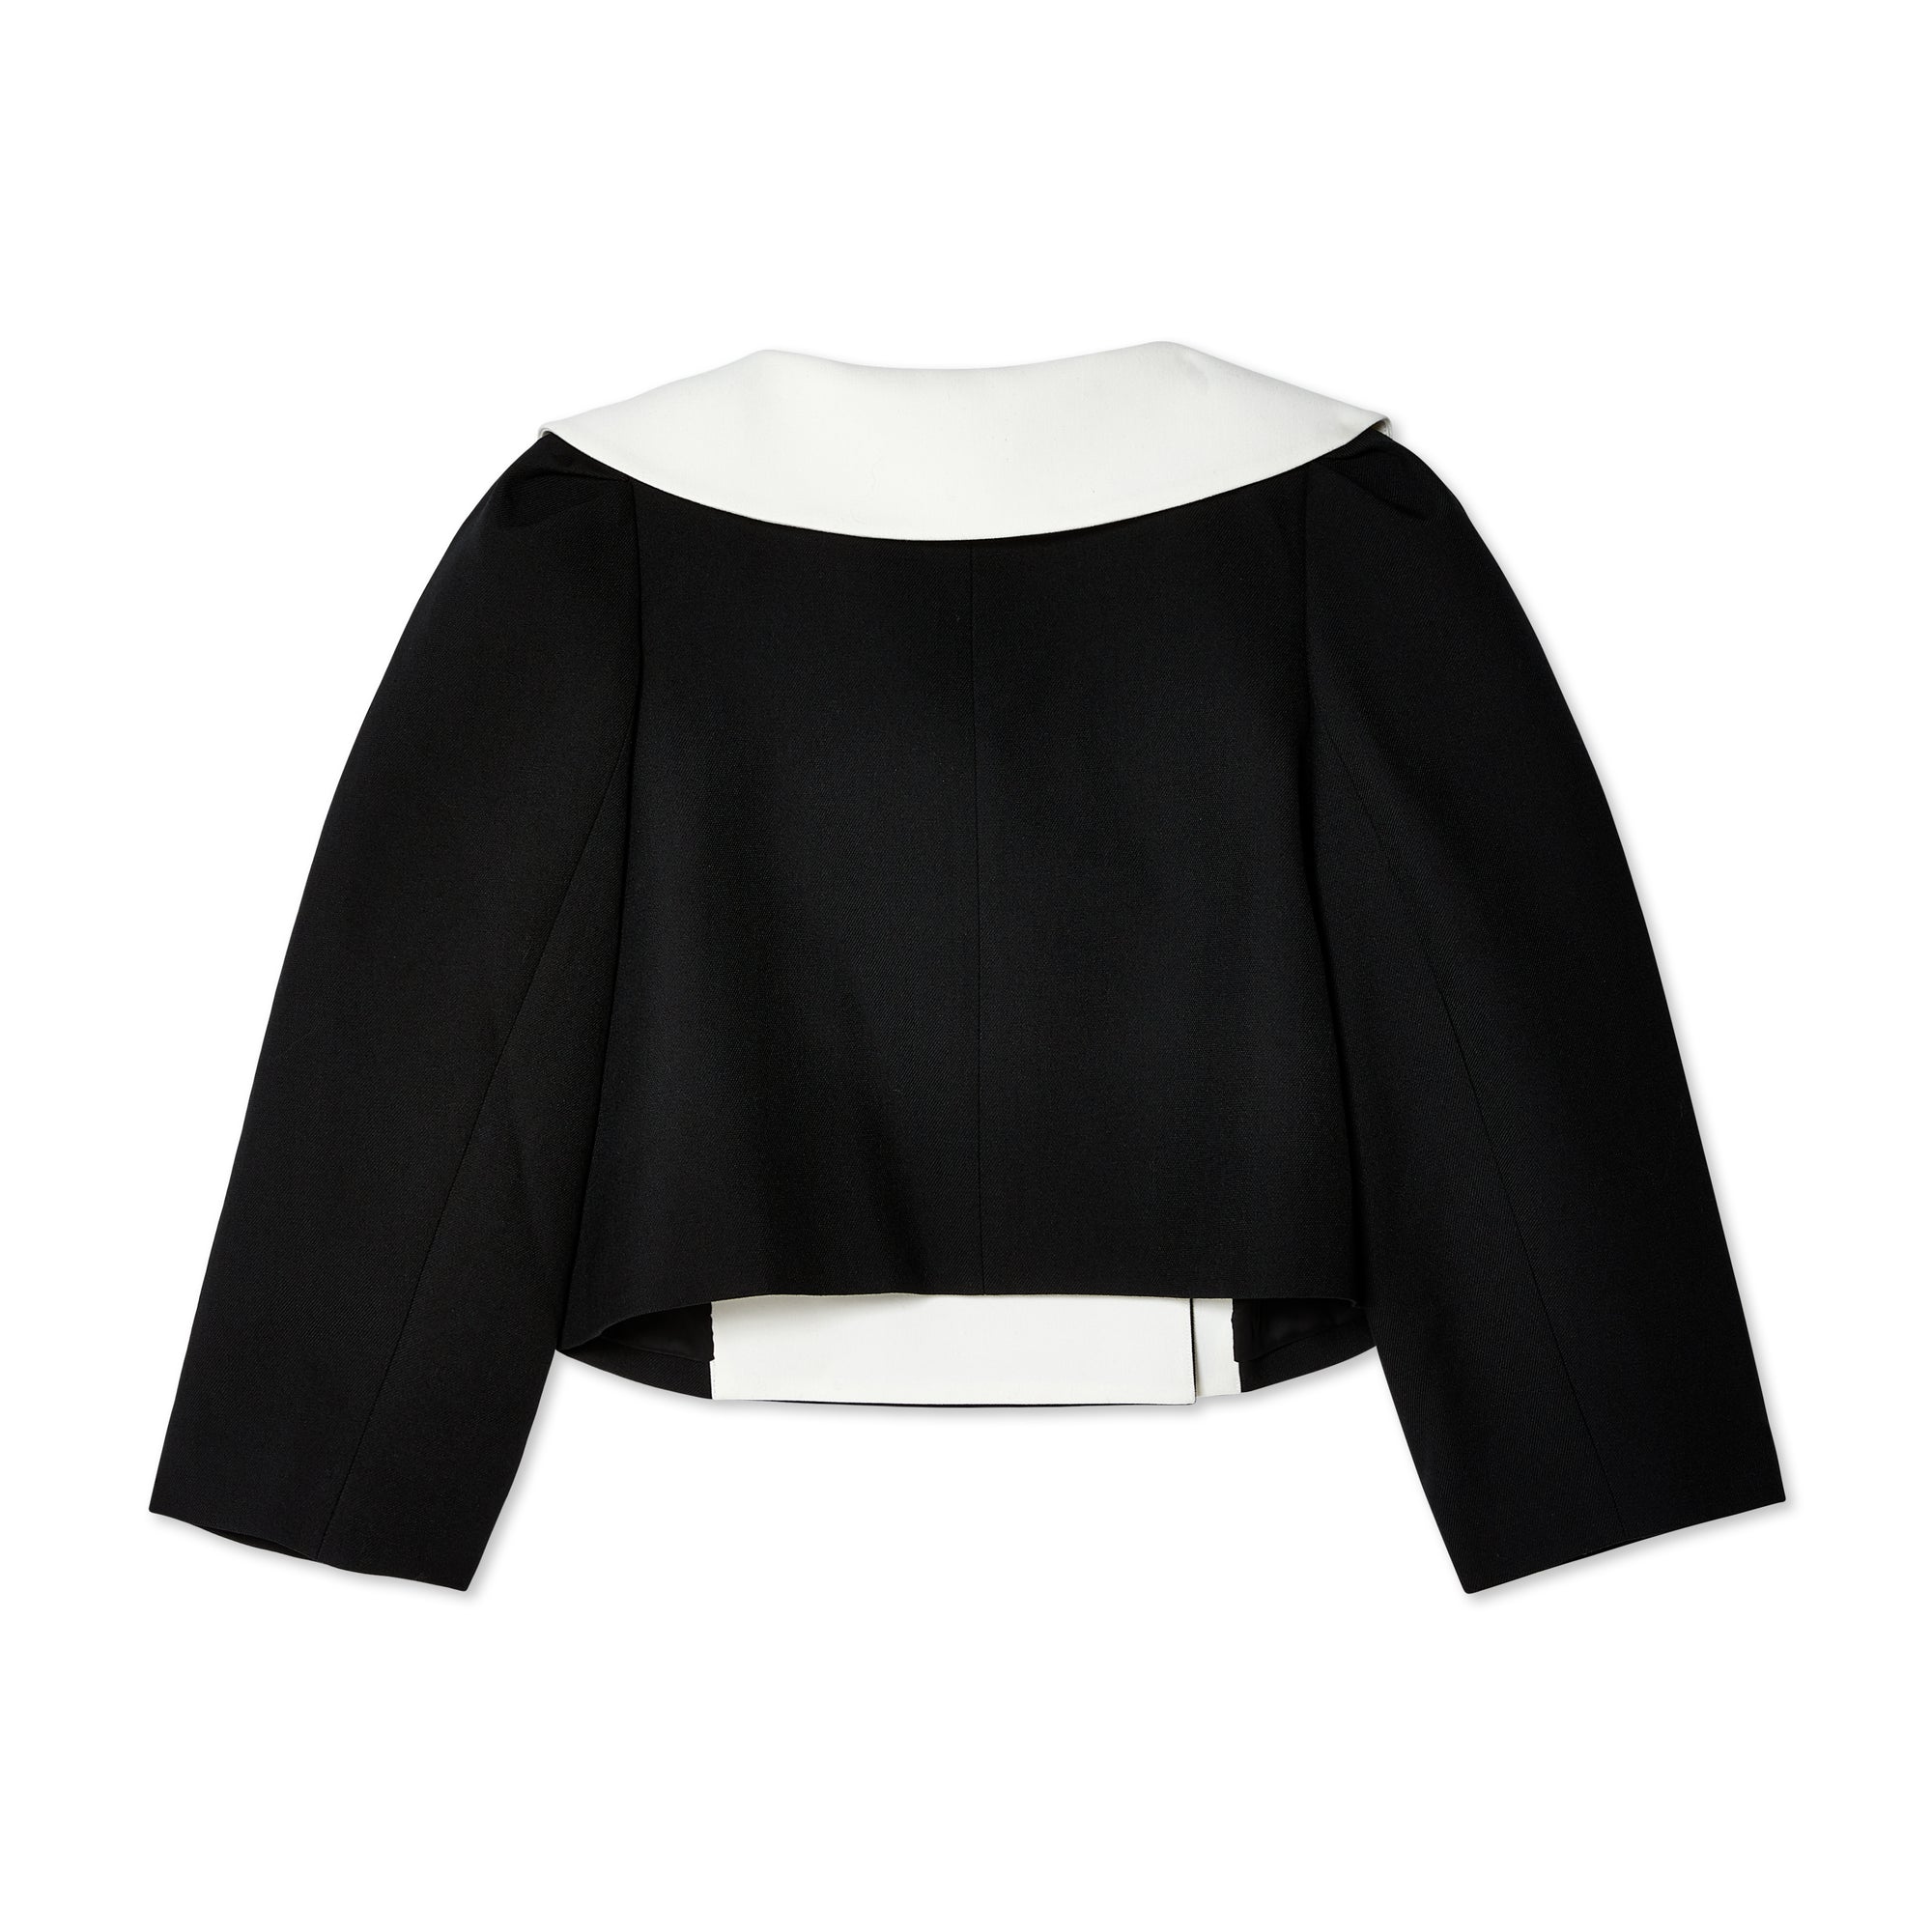 Shushu/Tong - Women's Puff Sleeve Jacket - (Black) view 2